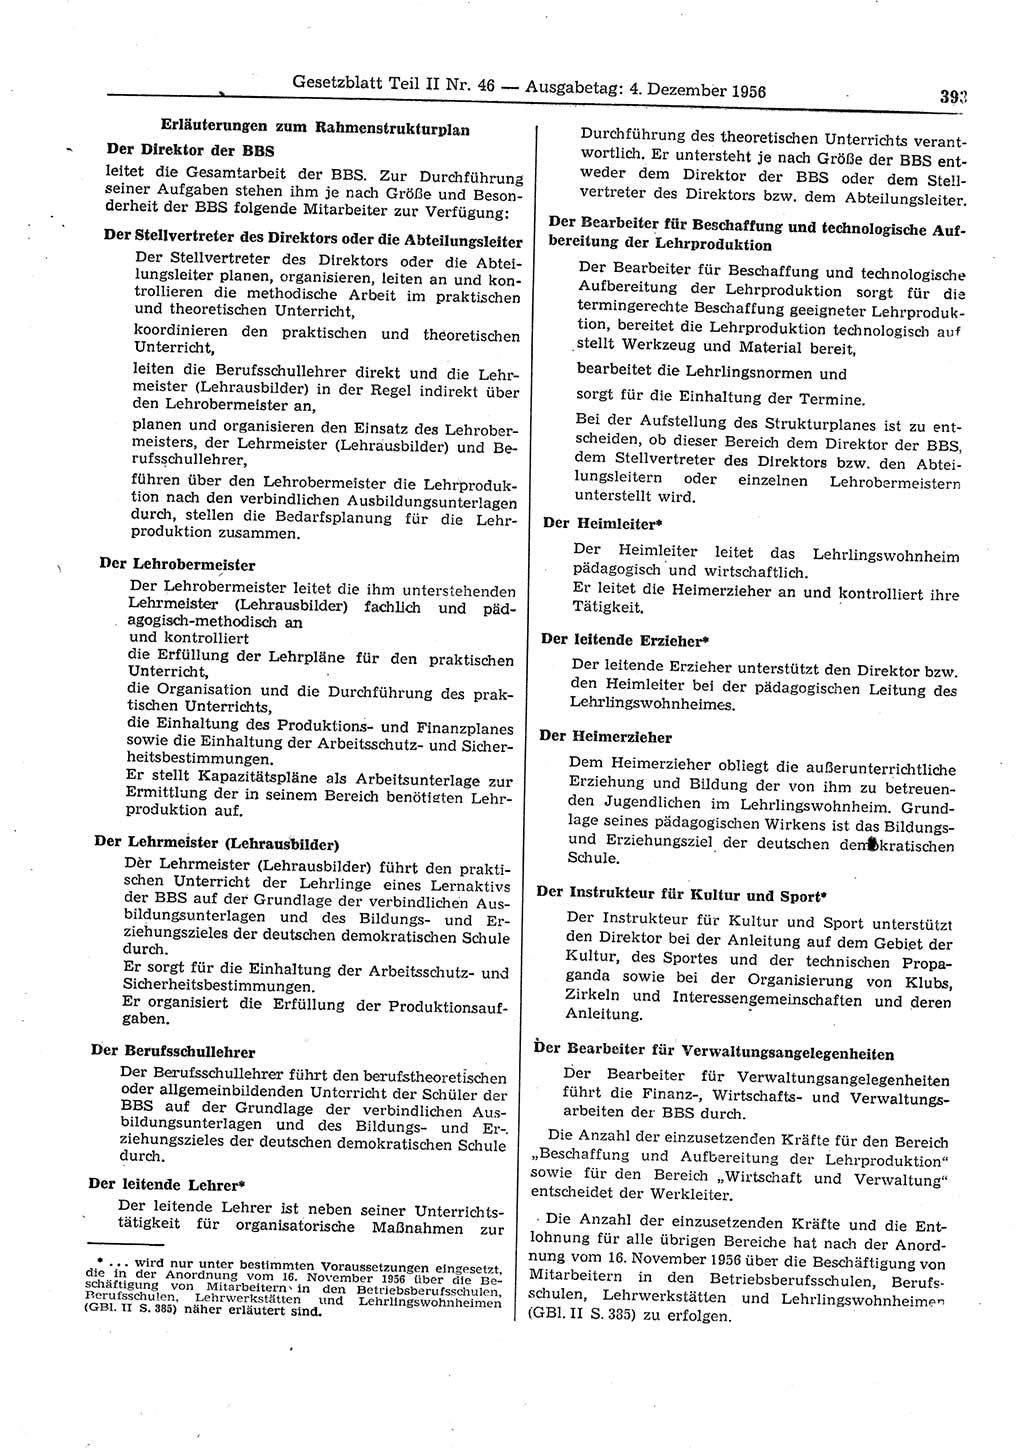 Gesetzblatt (GBl.) der Deutschen Demokratischen Republik (DDR) Teil ⅠⅠ 1956, Seite 393 (GBl. DDR ⅠⅠ 1956, S. 393)